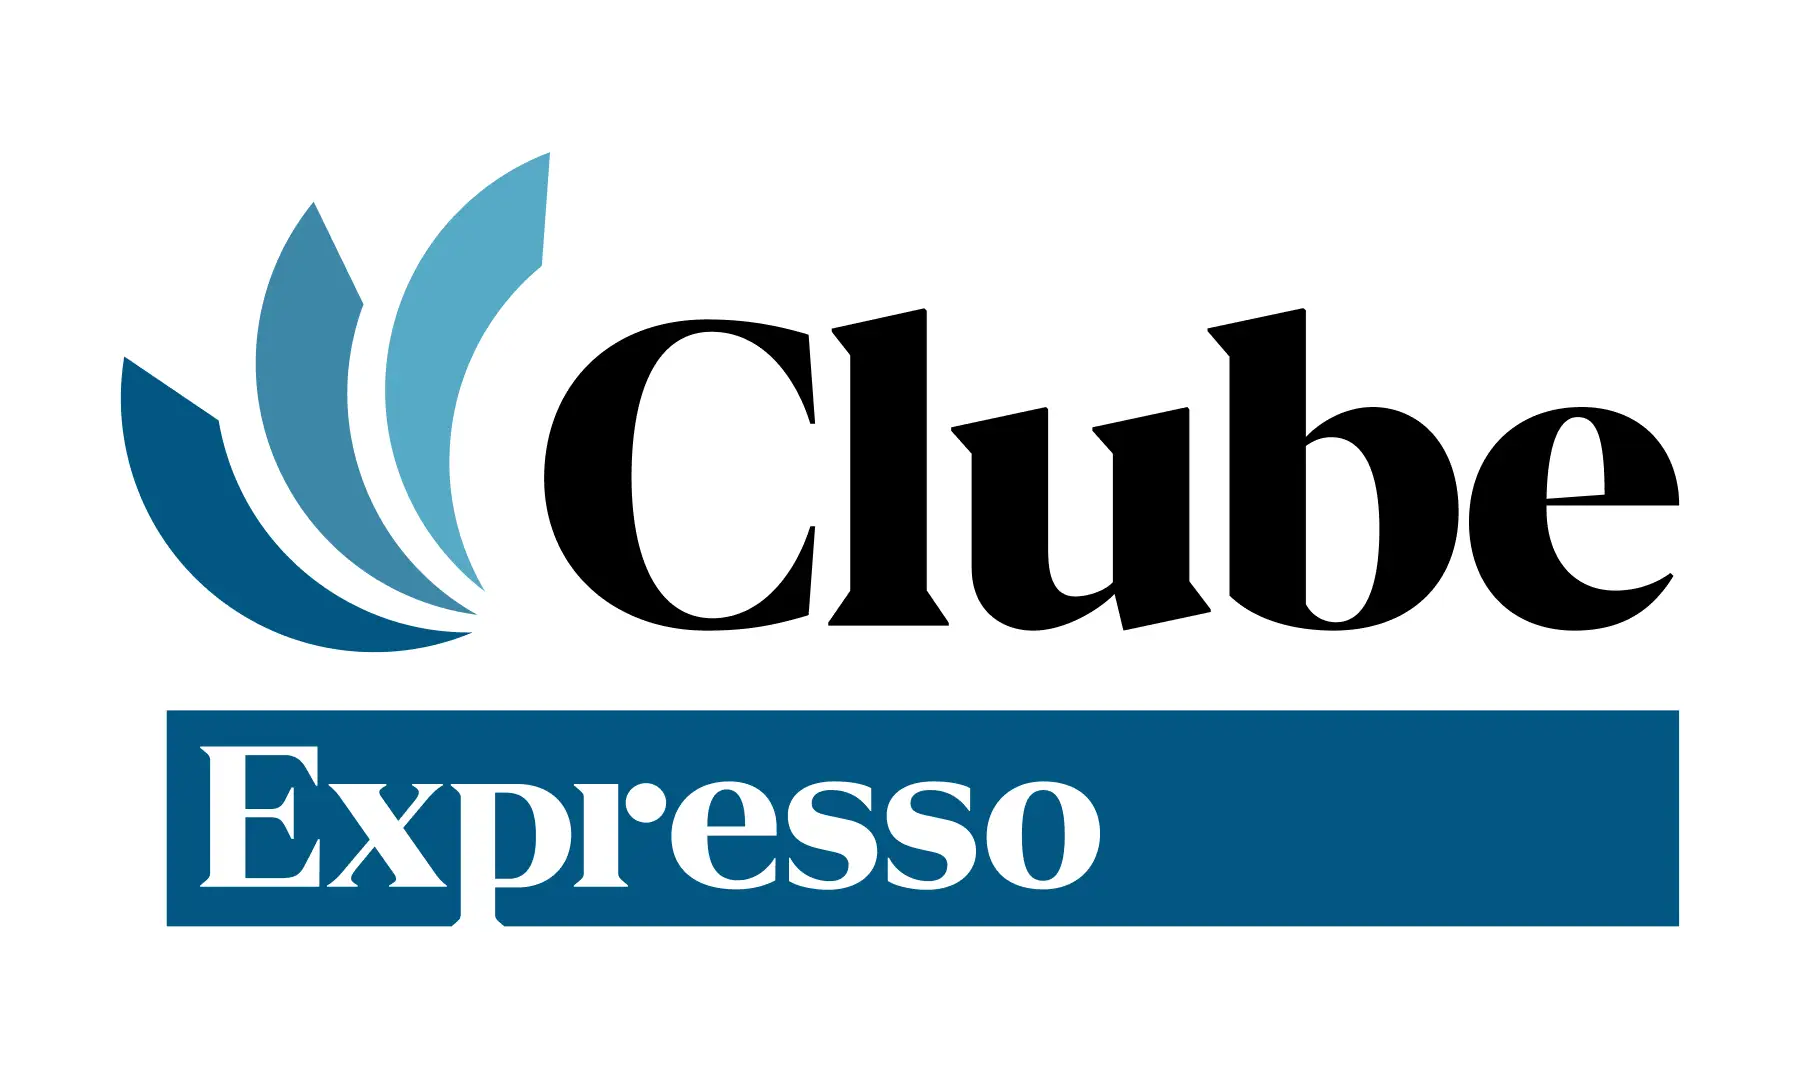 "Junte-se à Conversa" e um "Café Expresso" na Guarda: o Clube desta semana